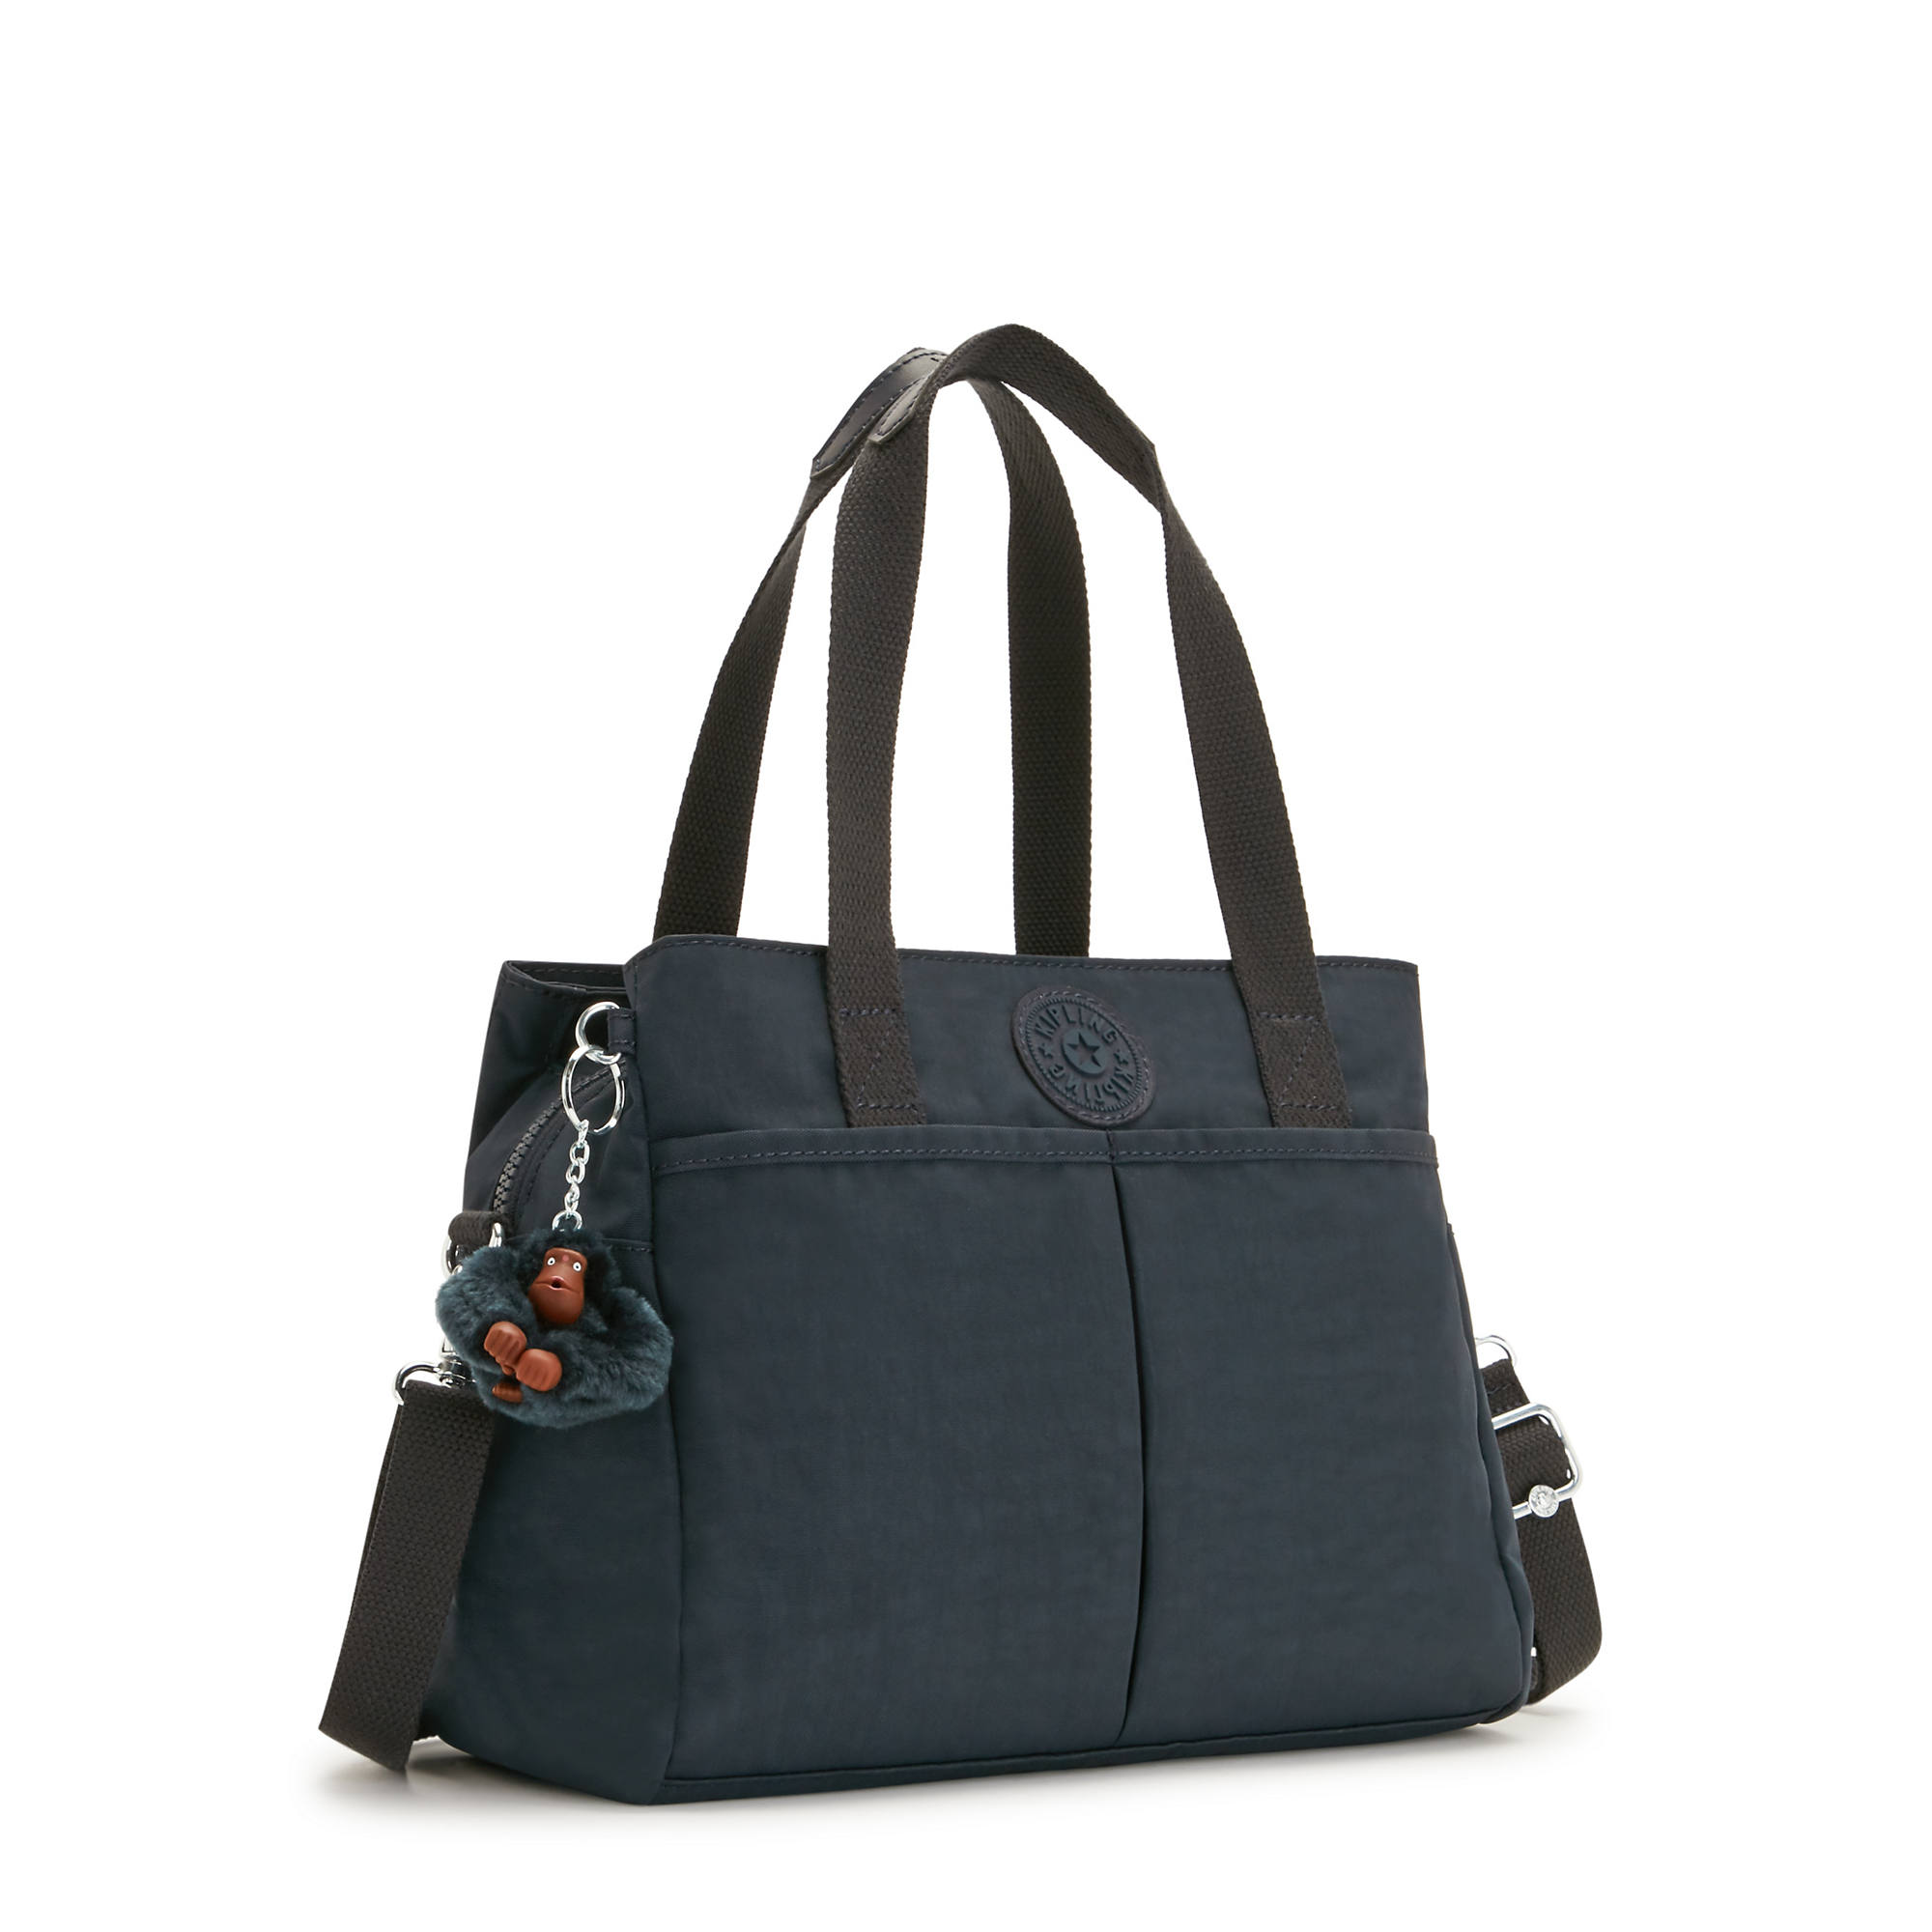 Kipling Women's Kenzie Shoulder Bag Adjustable Strap | eBay